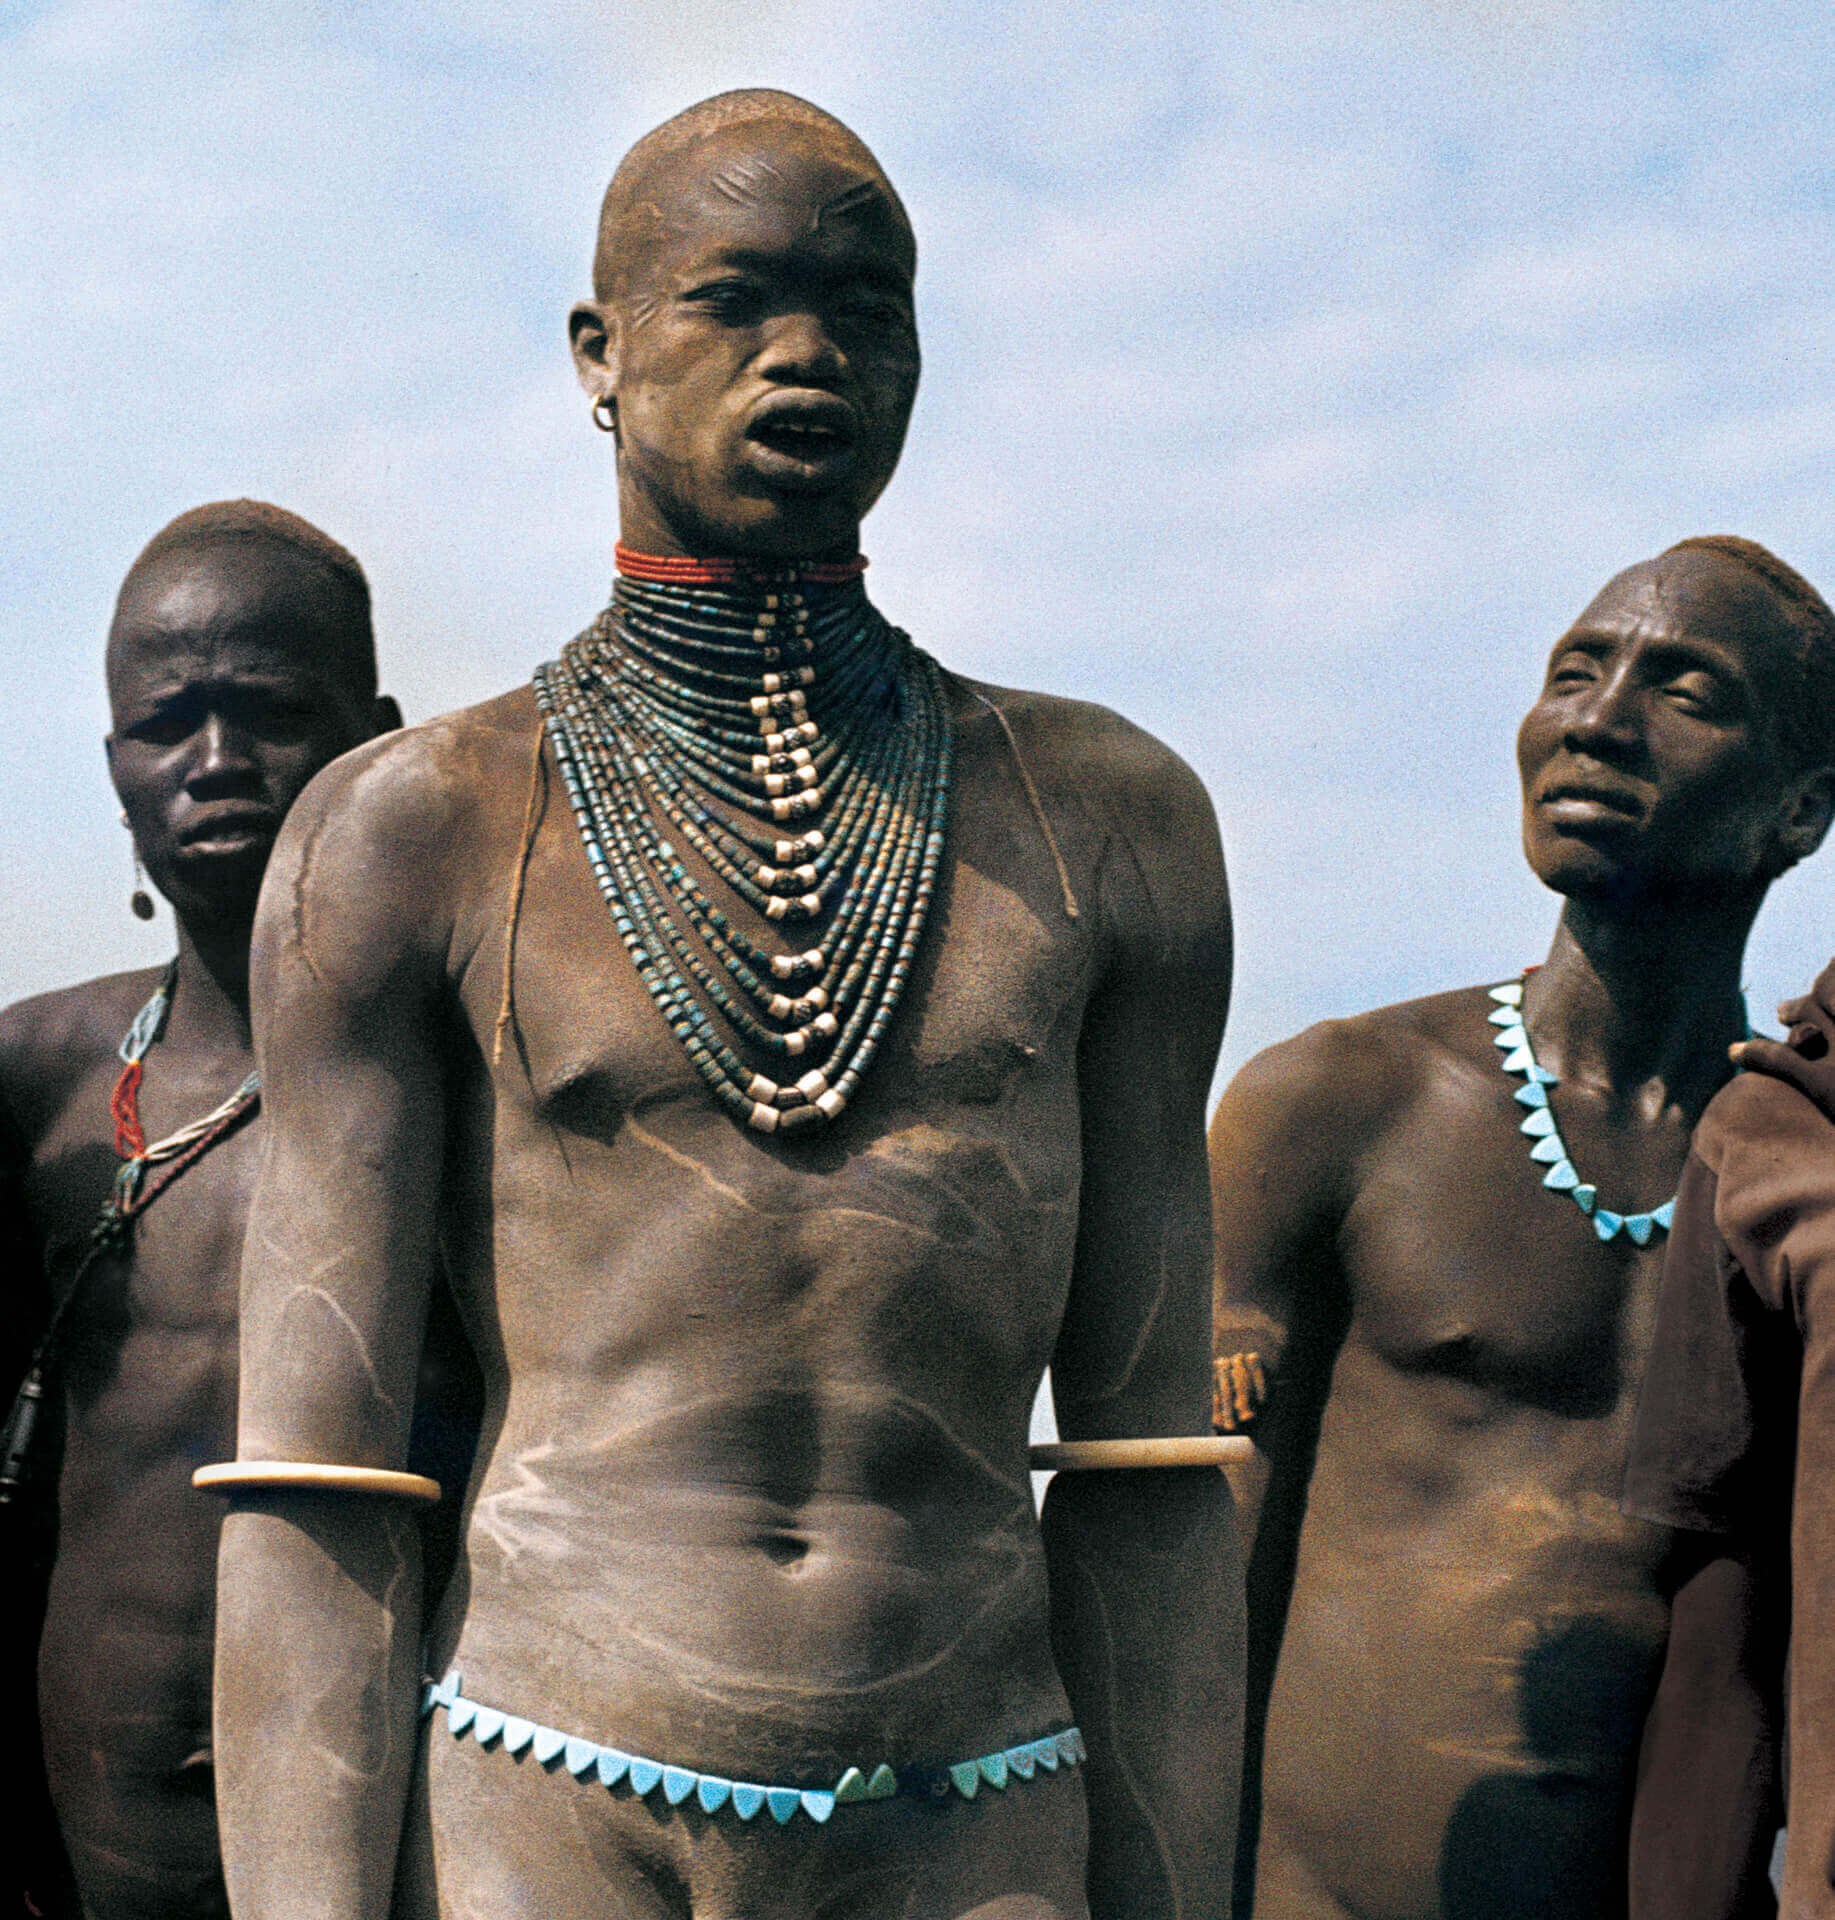 голые африканские члены фото 53